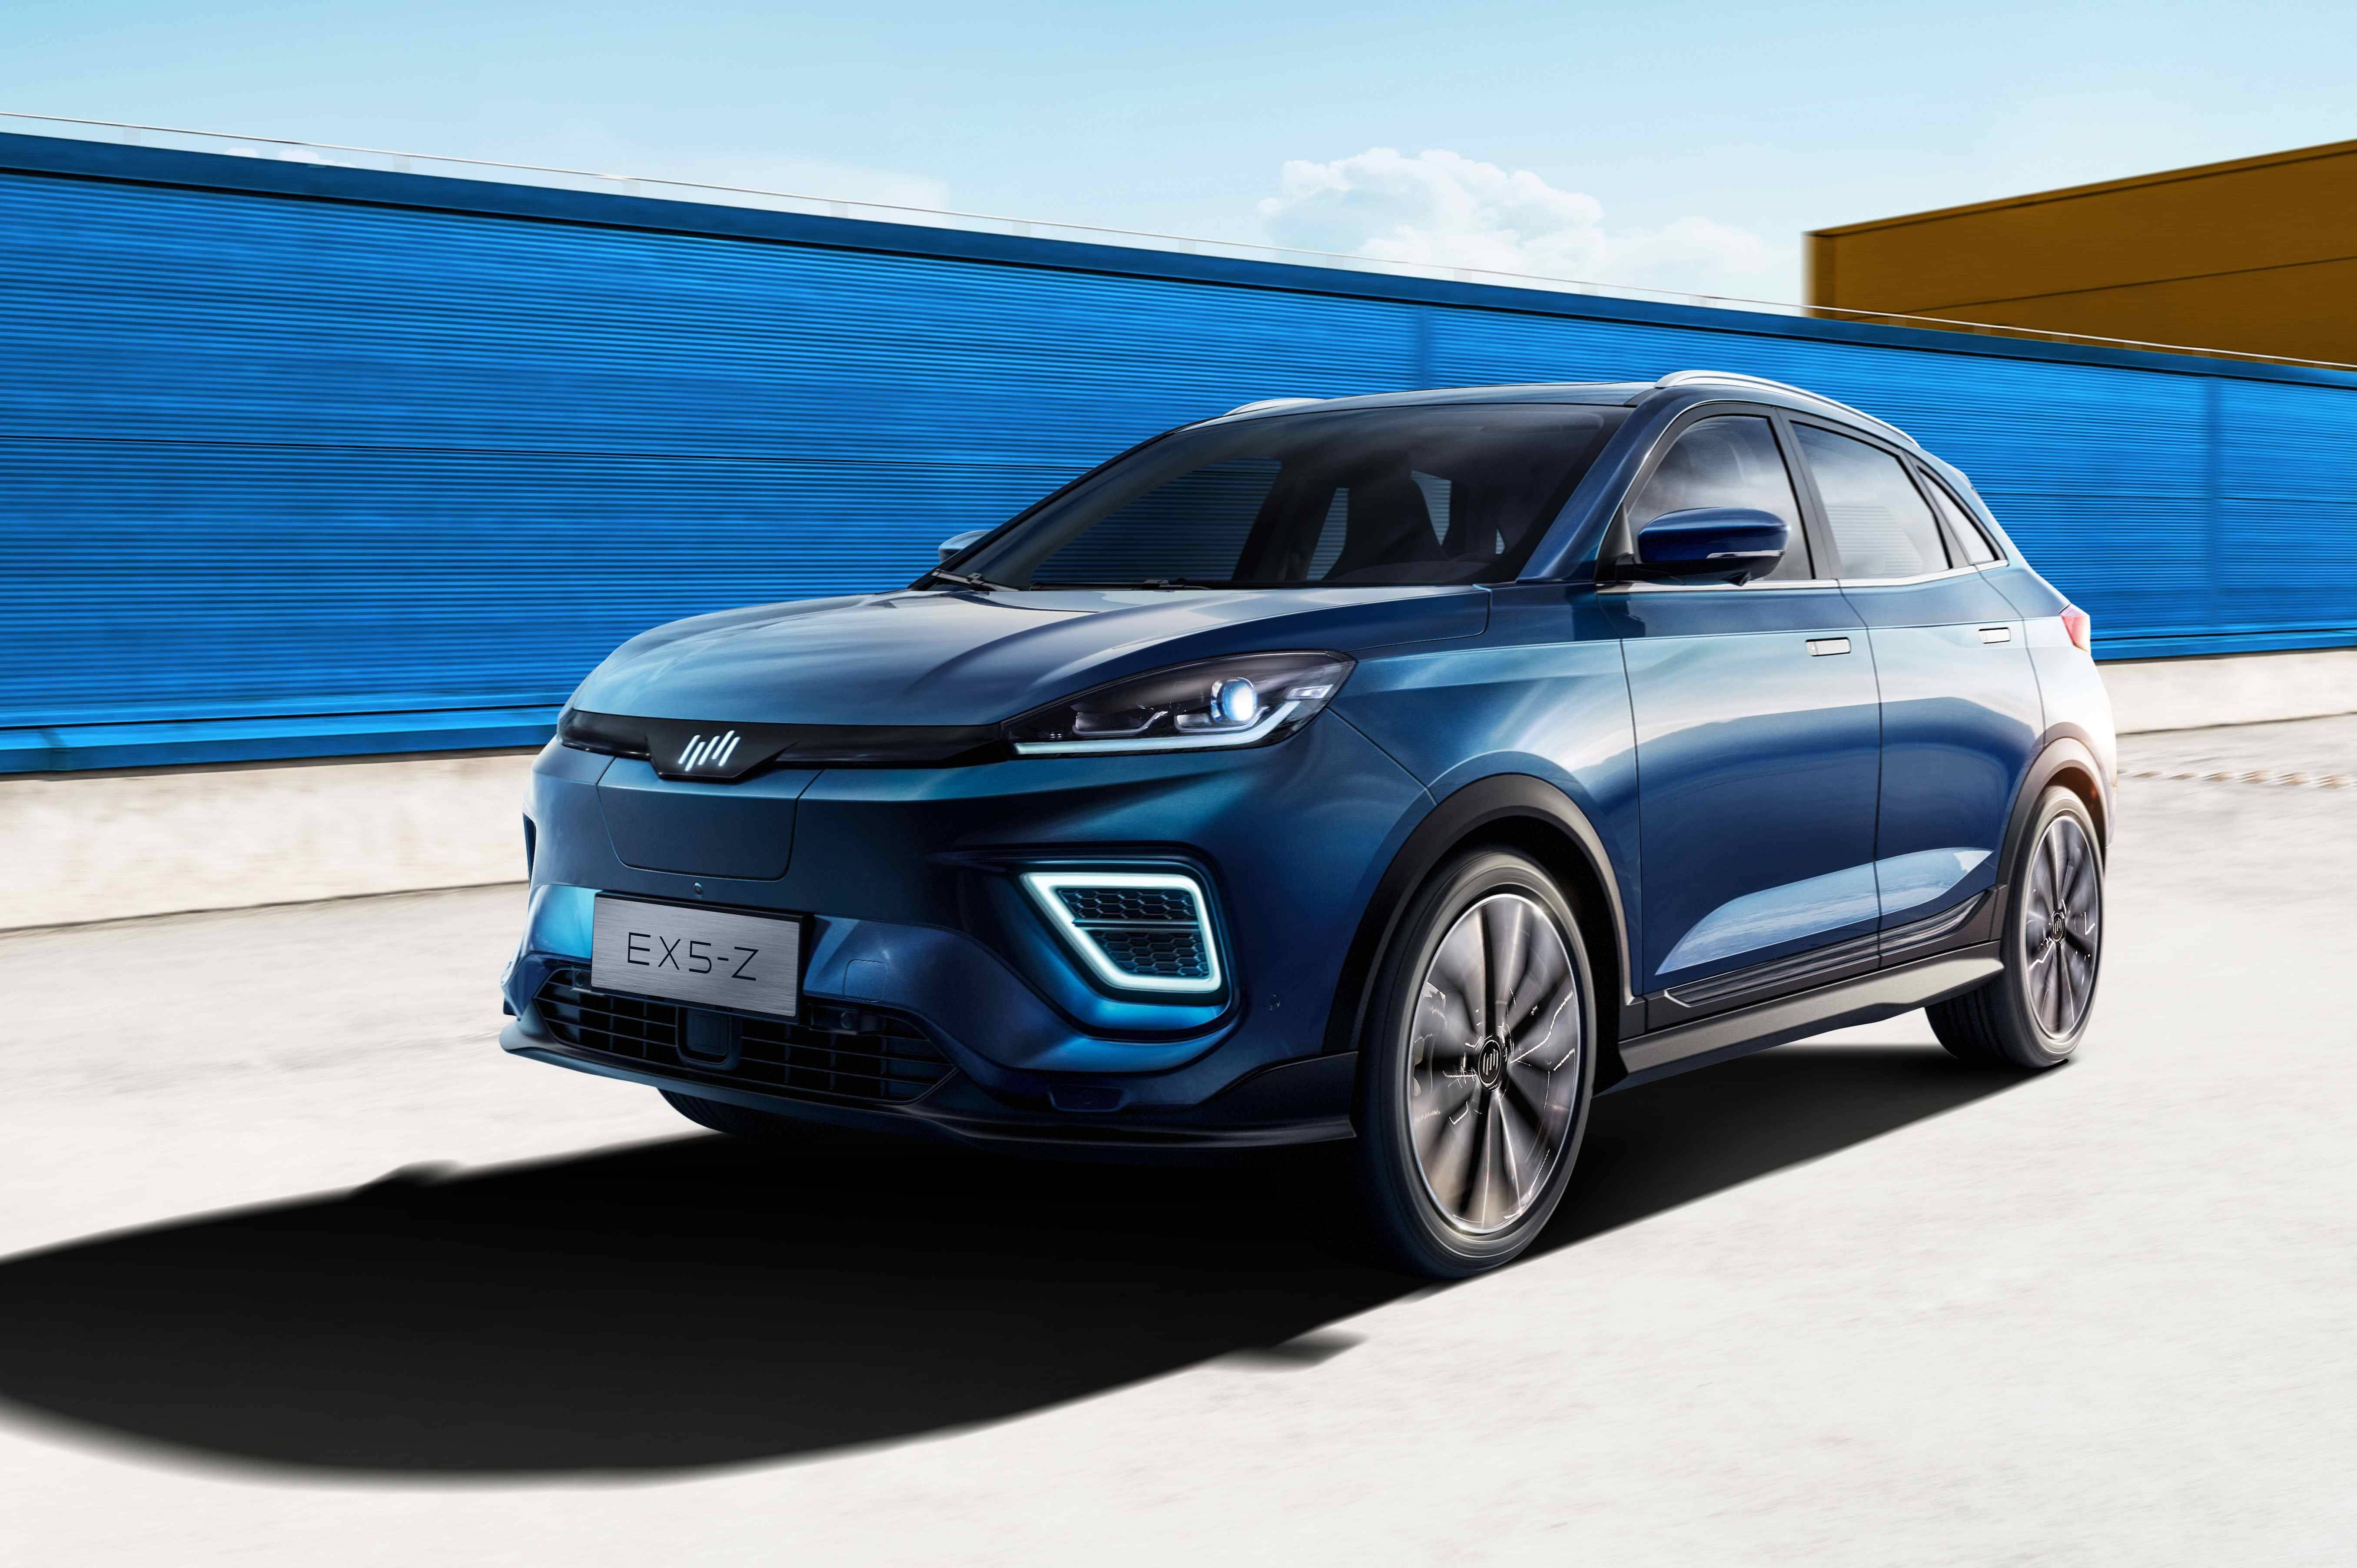 关于公司未来规划,威马汽车ceo沈辉表示,随着新能源汽车步入下半场